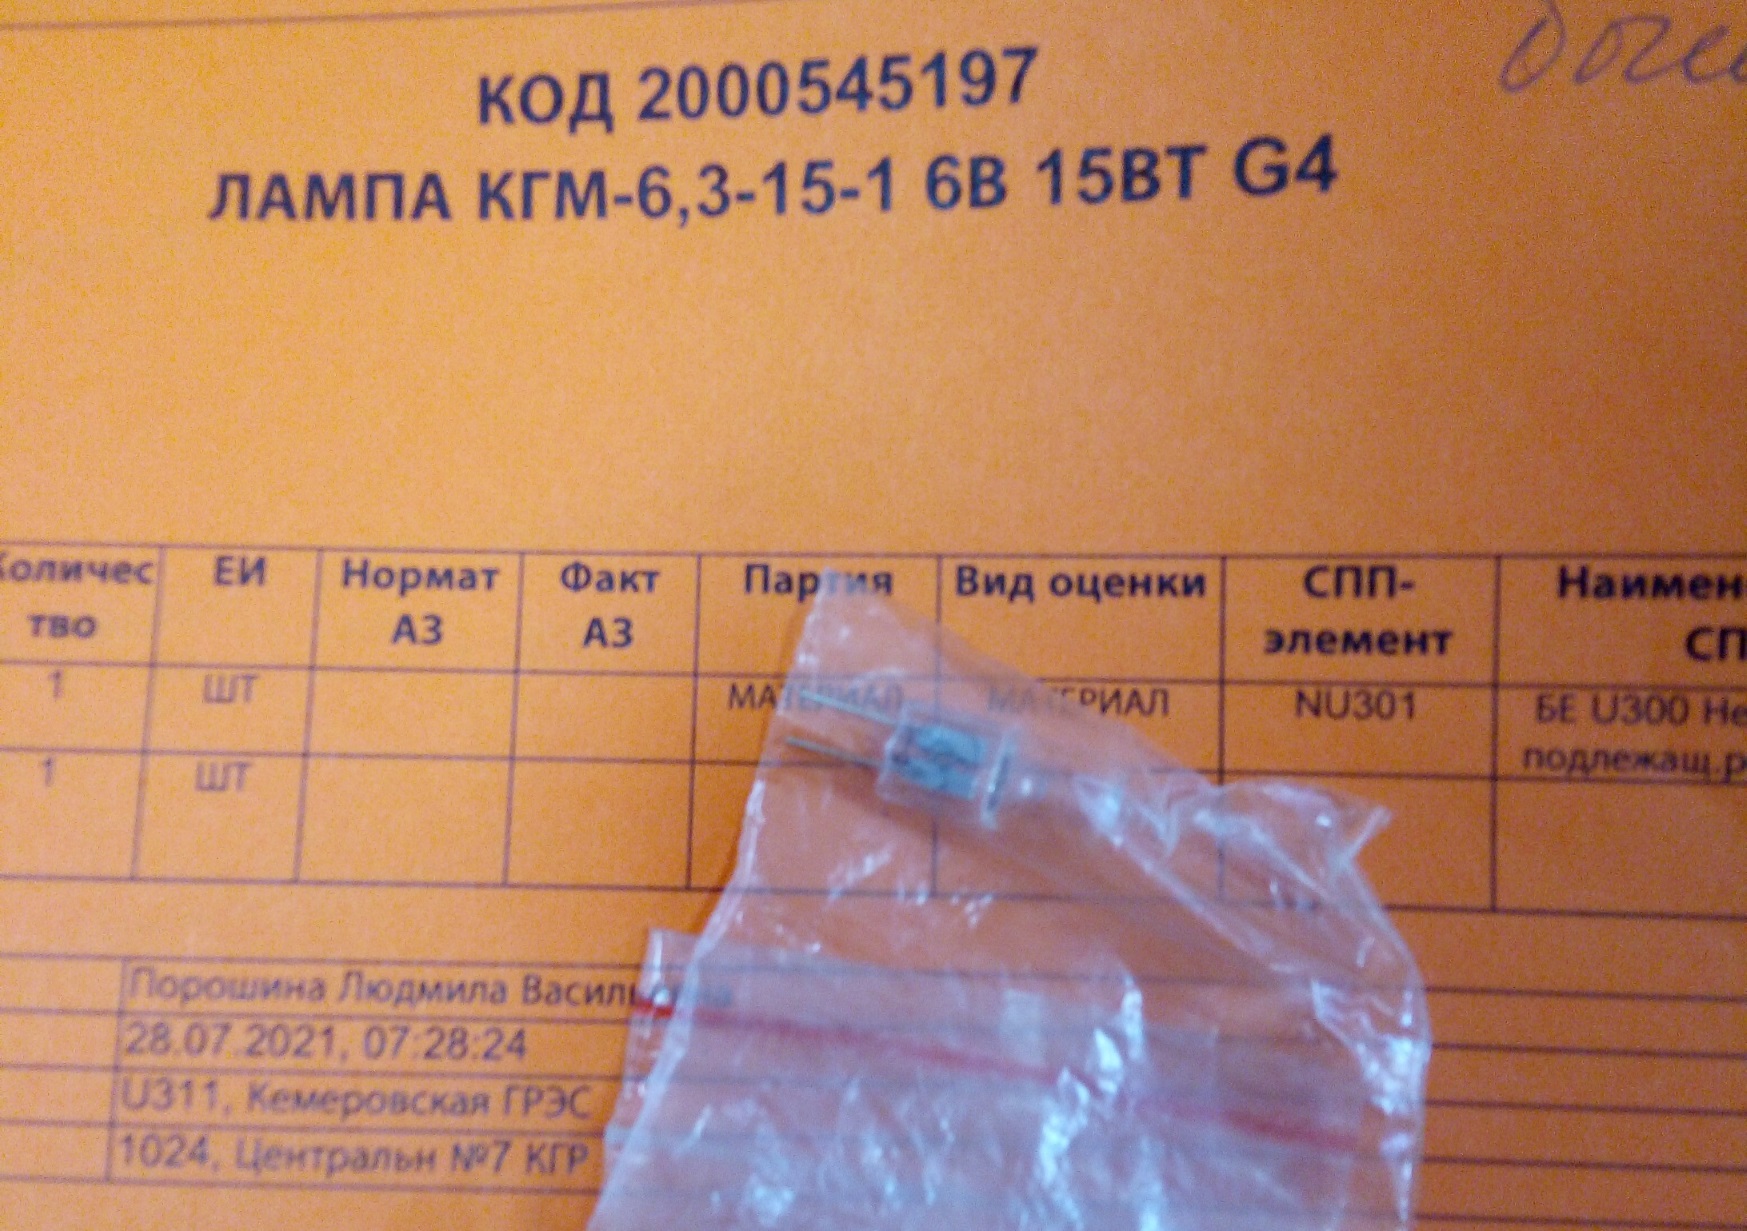 ЛАМПА КГМ-6,3-15-1 6В 15ВТ G4